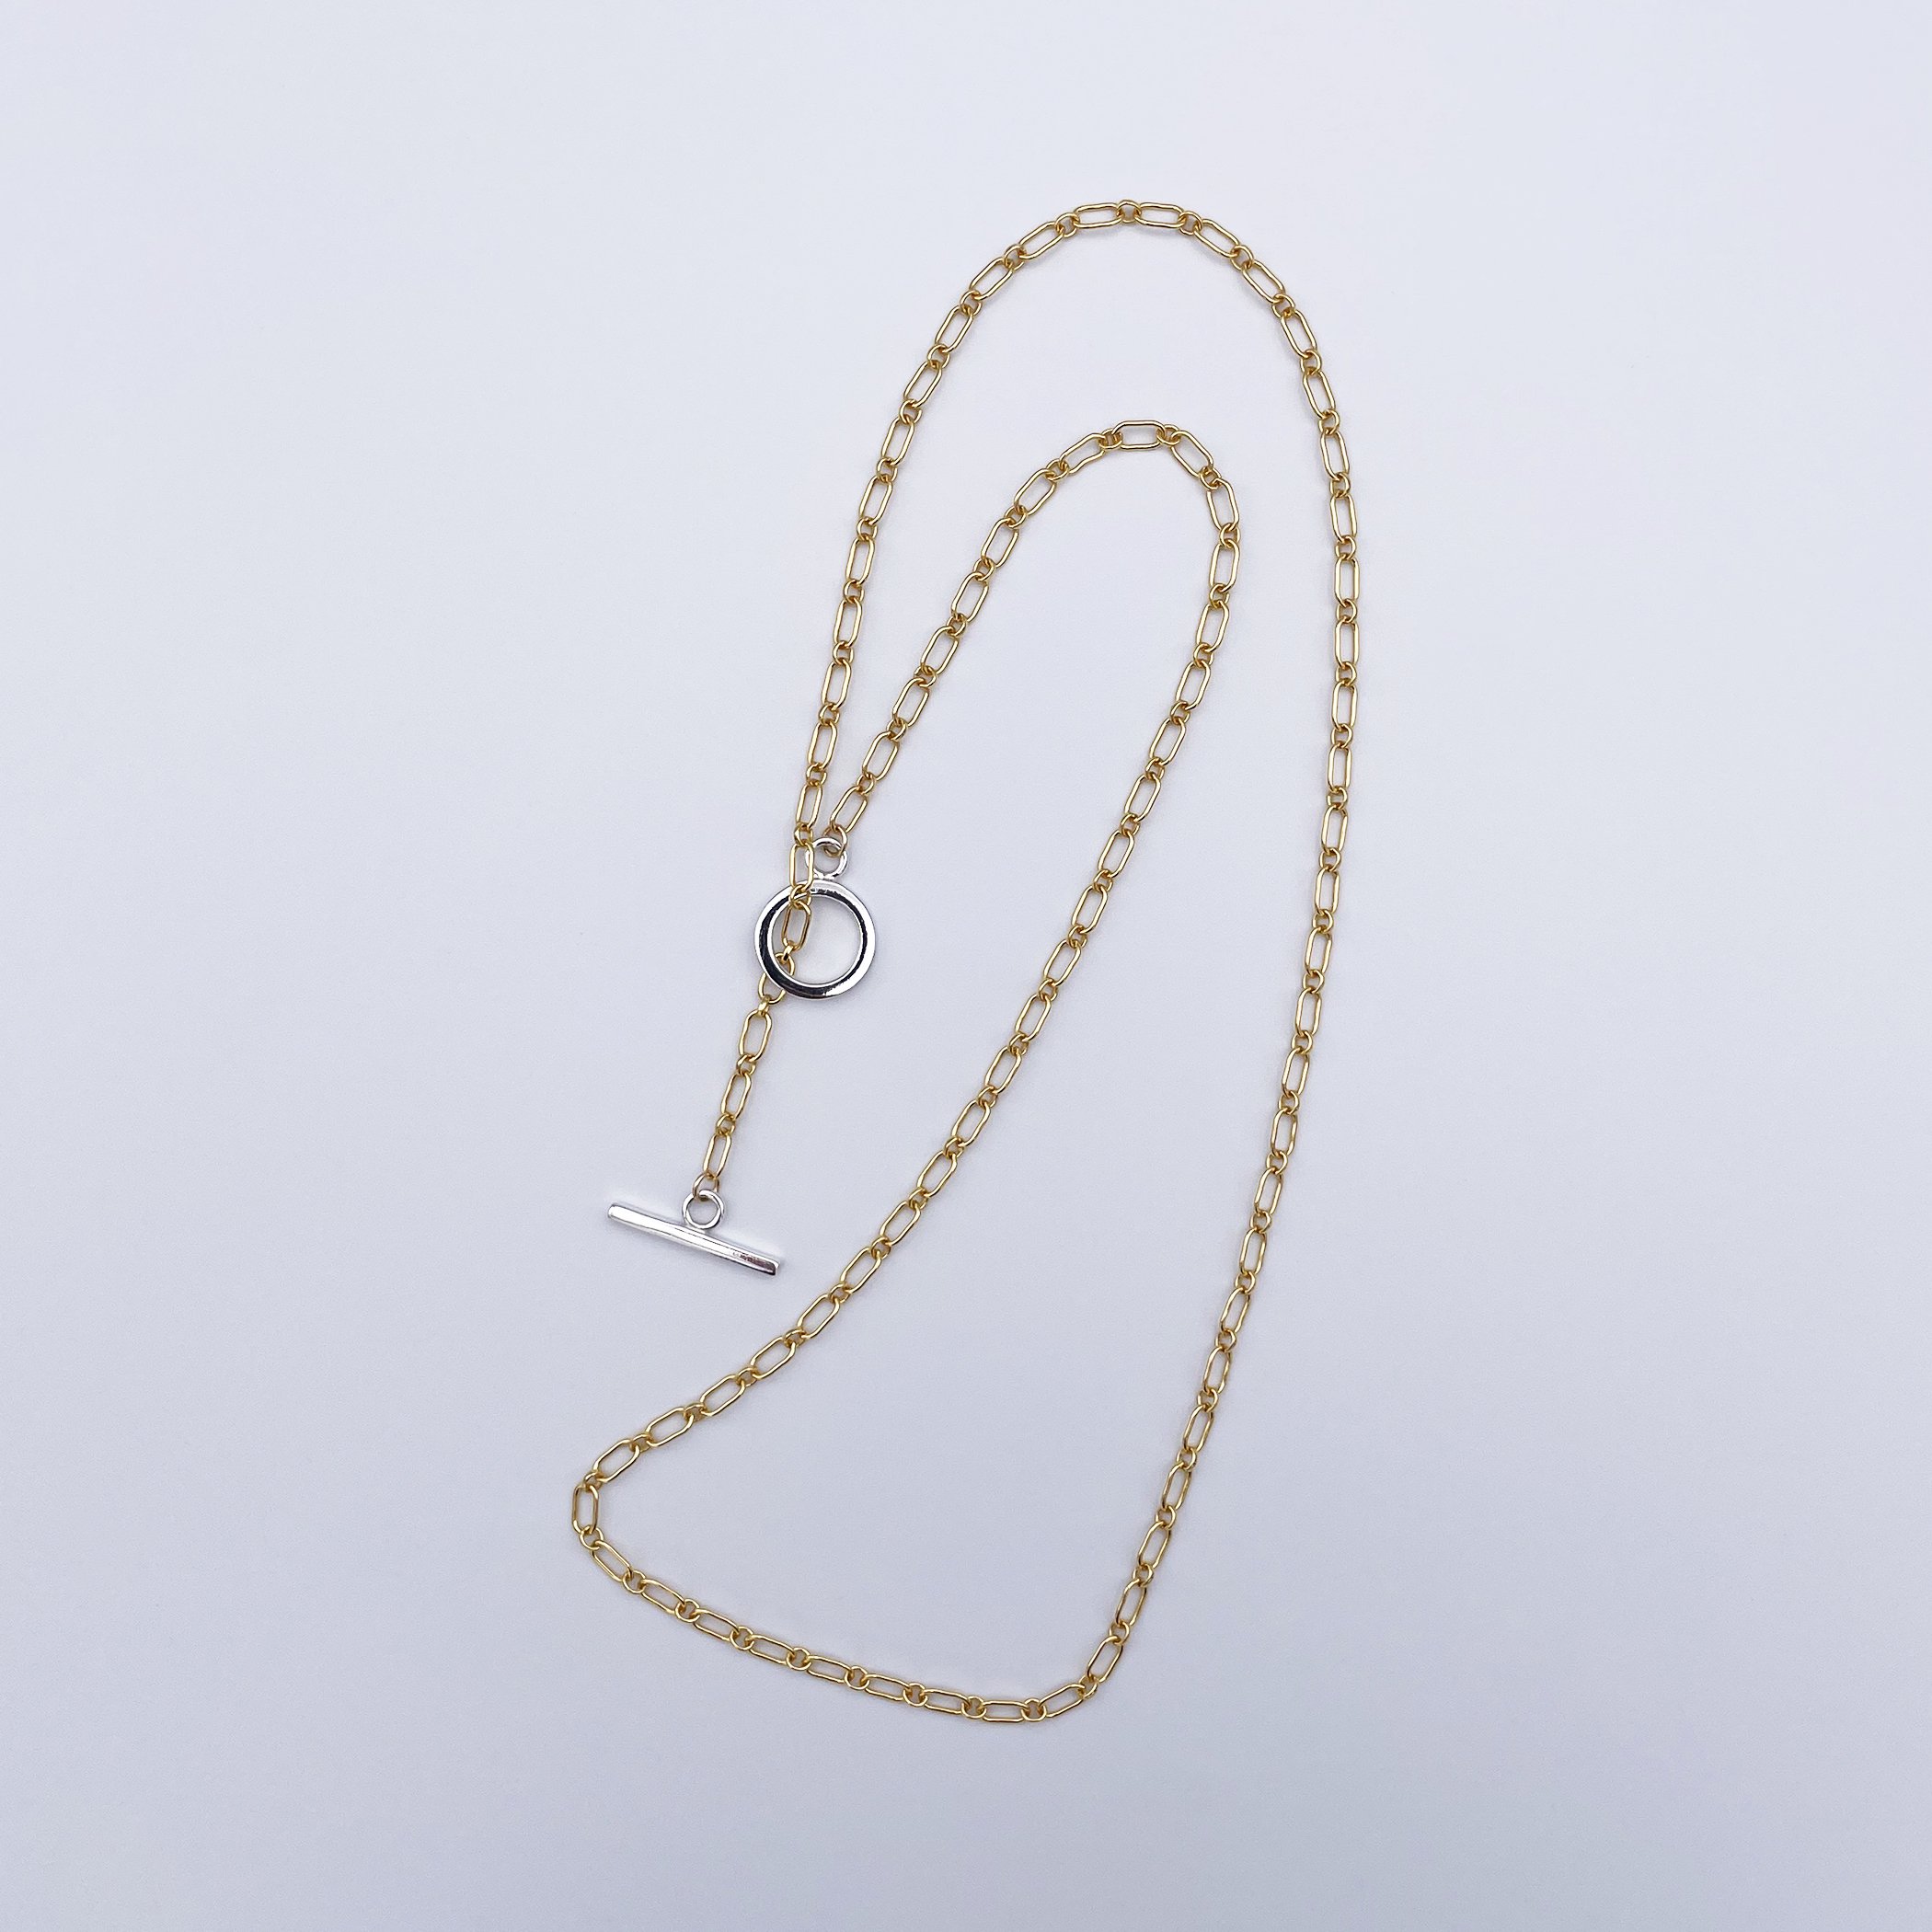 vihod - bicolor necklace GS 02